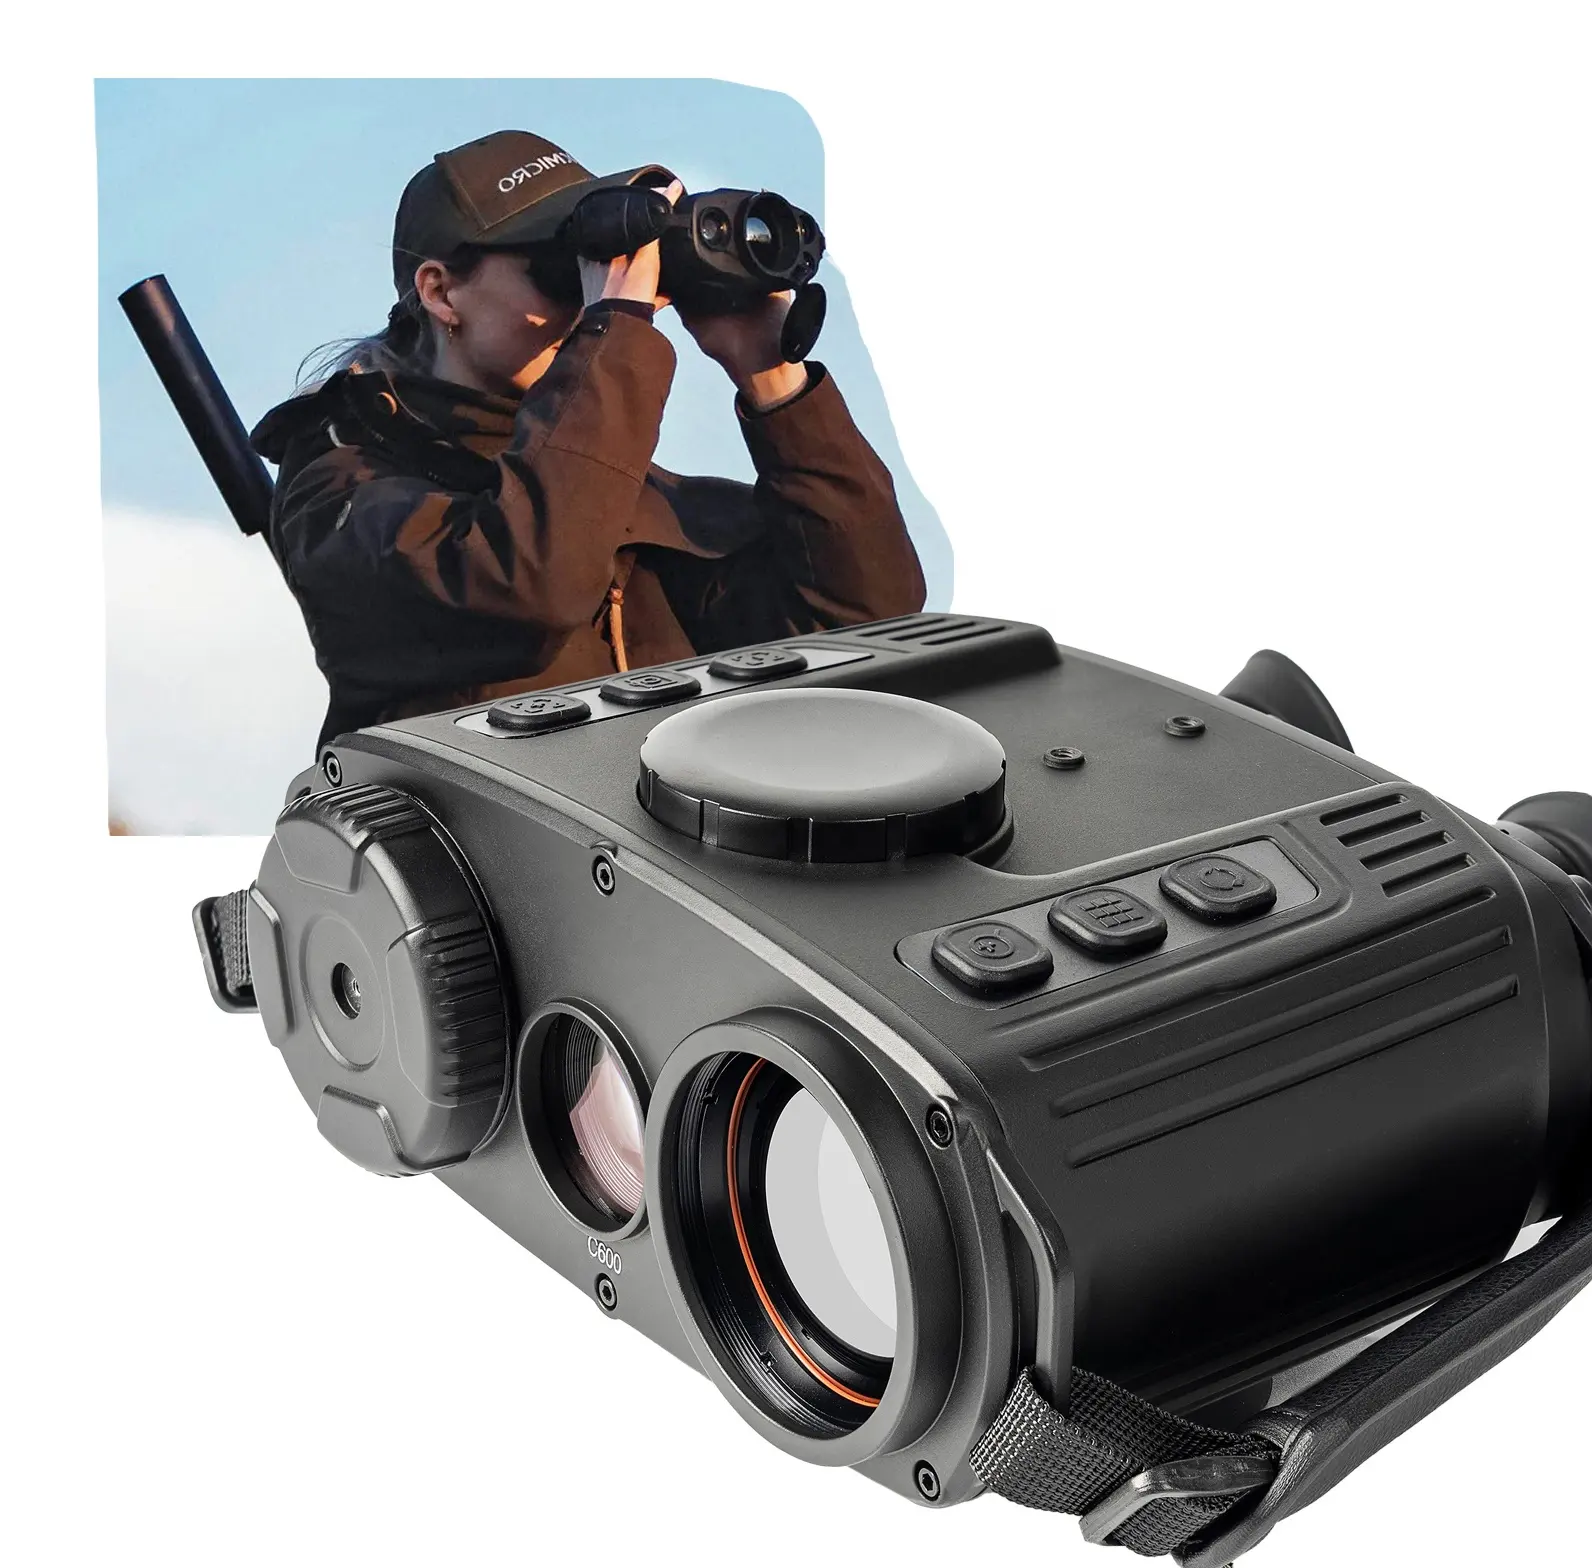 Teropong kamera termal, kamera jarak jauh profesional, kacamata pencitraan termal penglihatan malam untuk berburu